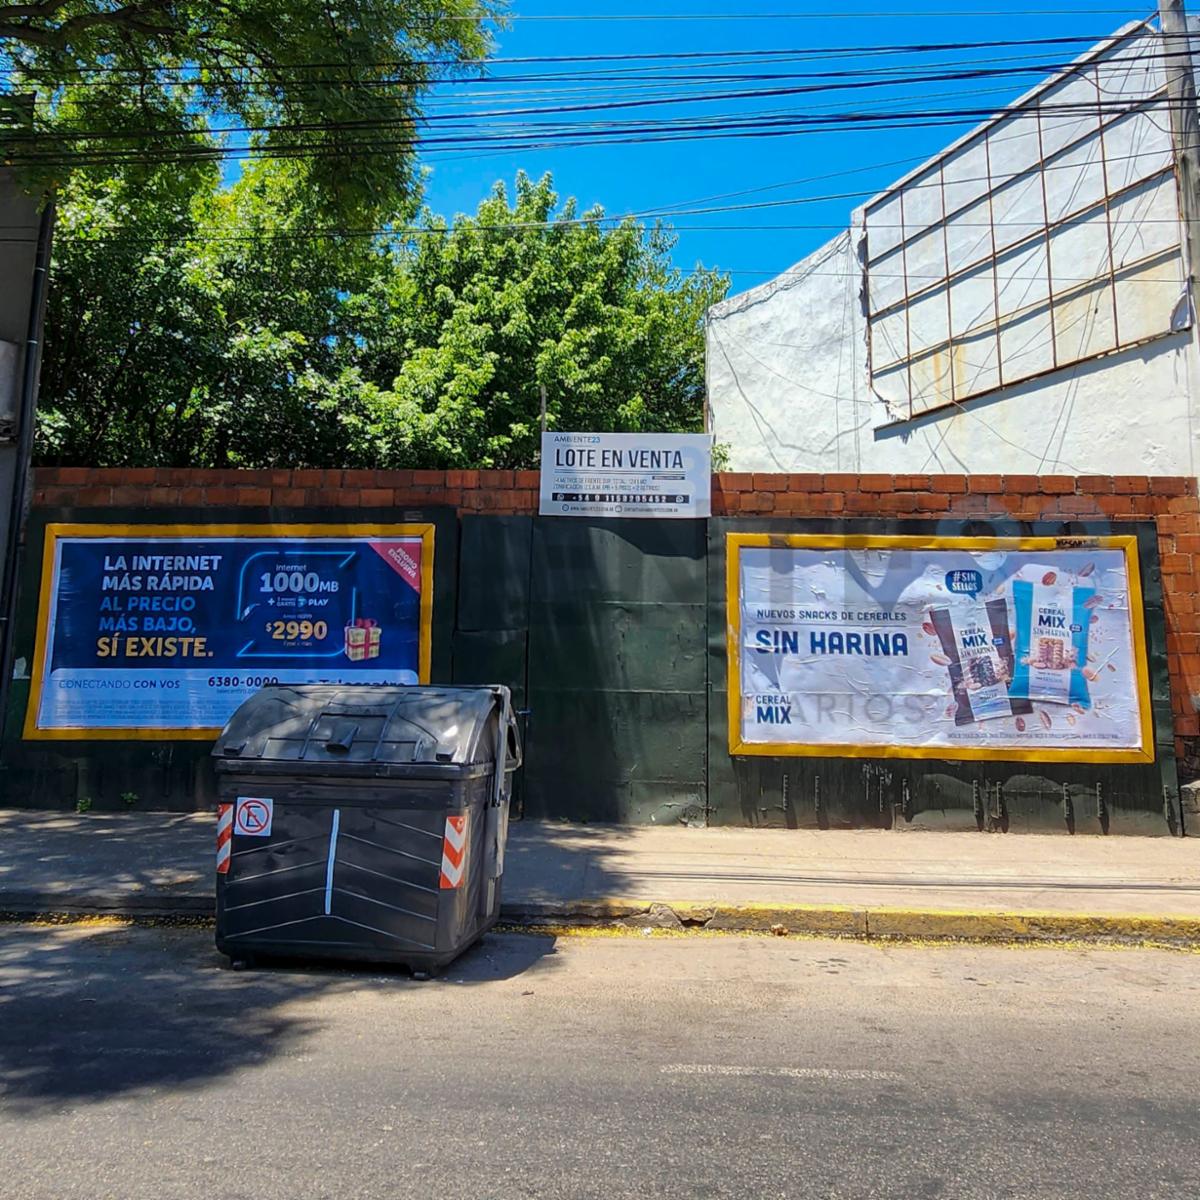 Avenida Velez Sarsfield 700 - Importante lote en venta - Barracas